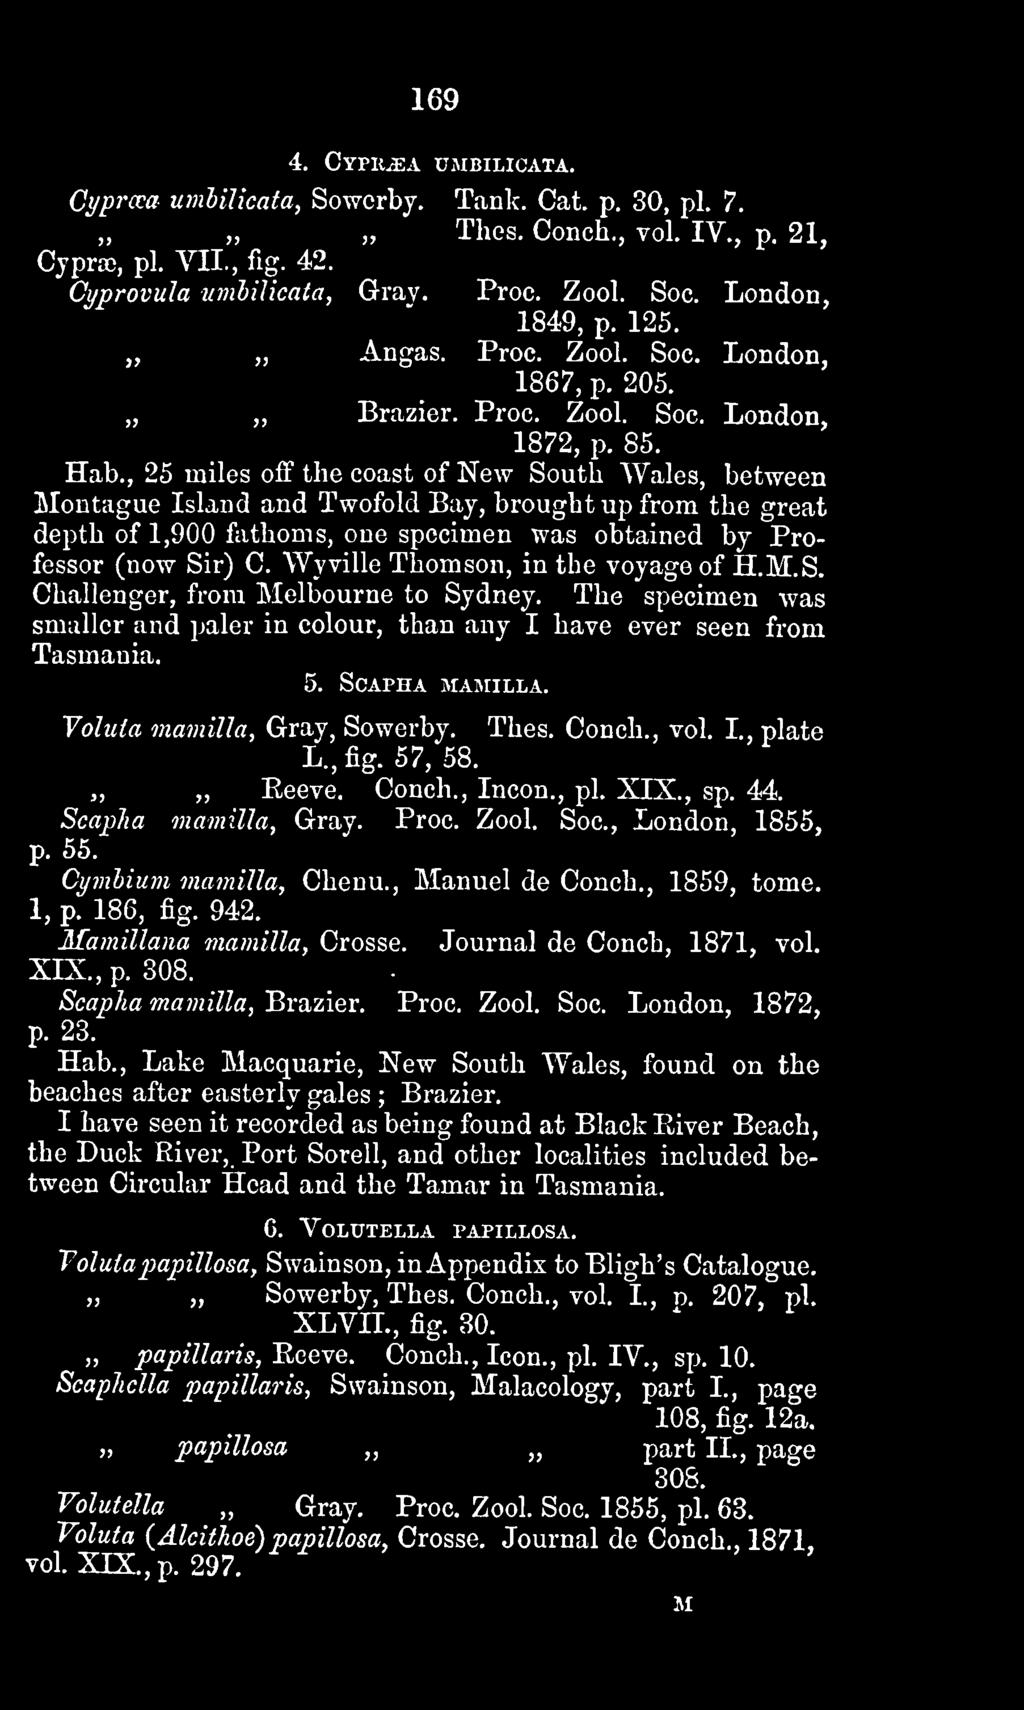 Valuta mamilla, Gray, Sowerby. L., fig. 57, 58. Thes. Conch., vol. I., plate Reeve. Conch., Incon., pi. XIX., sp. 44. Scaplia mamilla, Gray. Proc. Zool. Soc, London, 1855, p. 55.